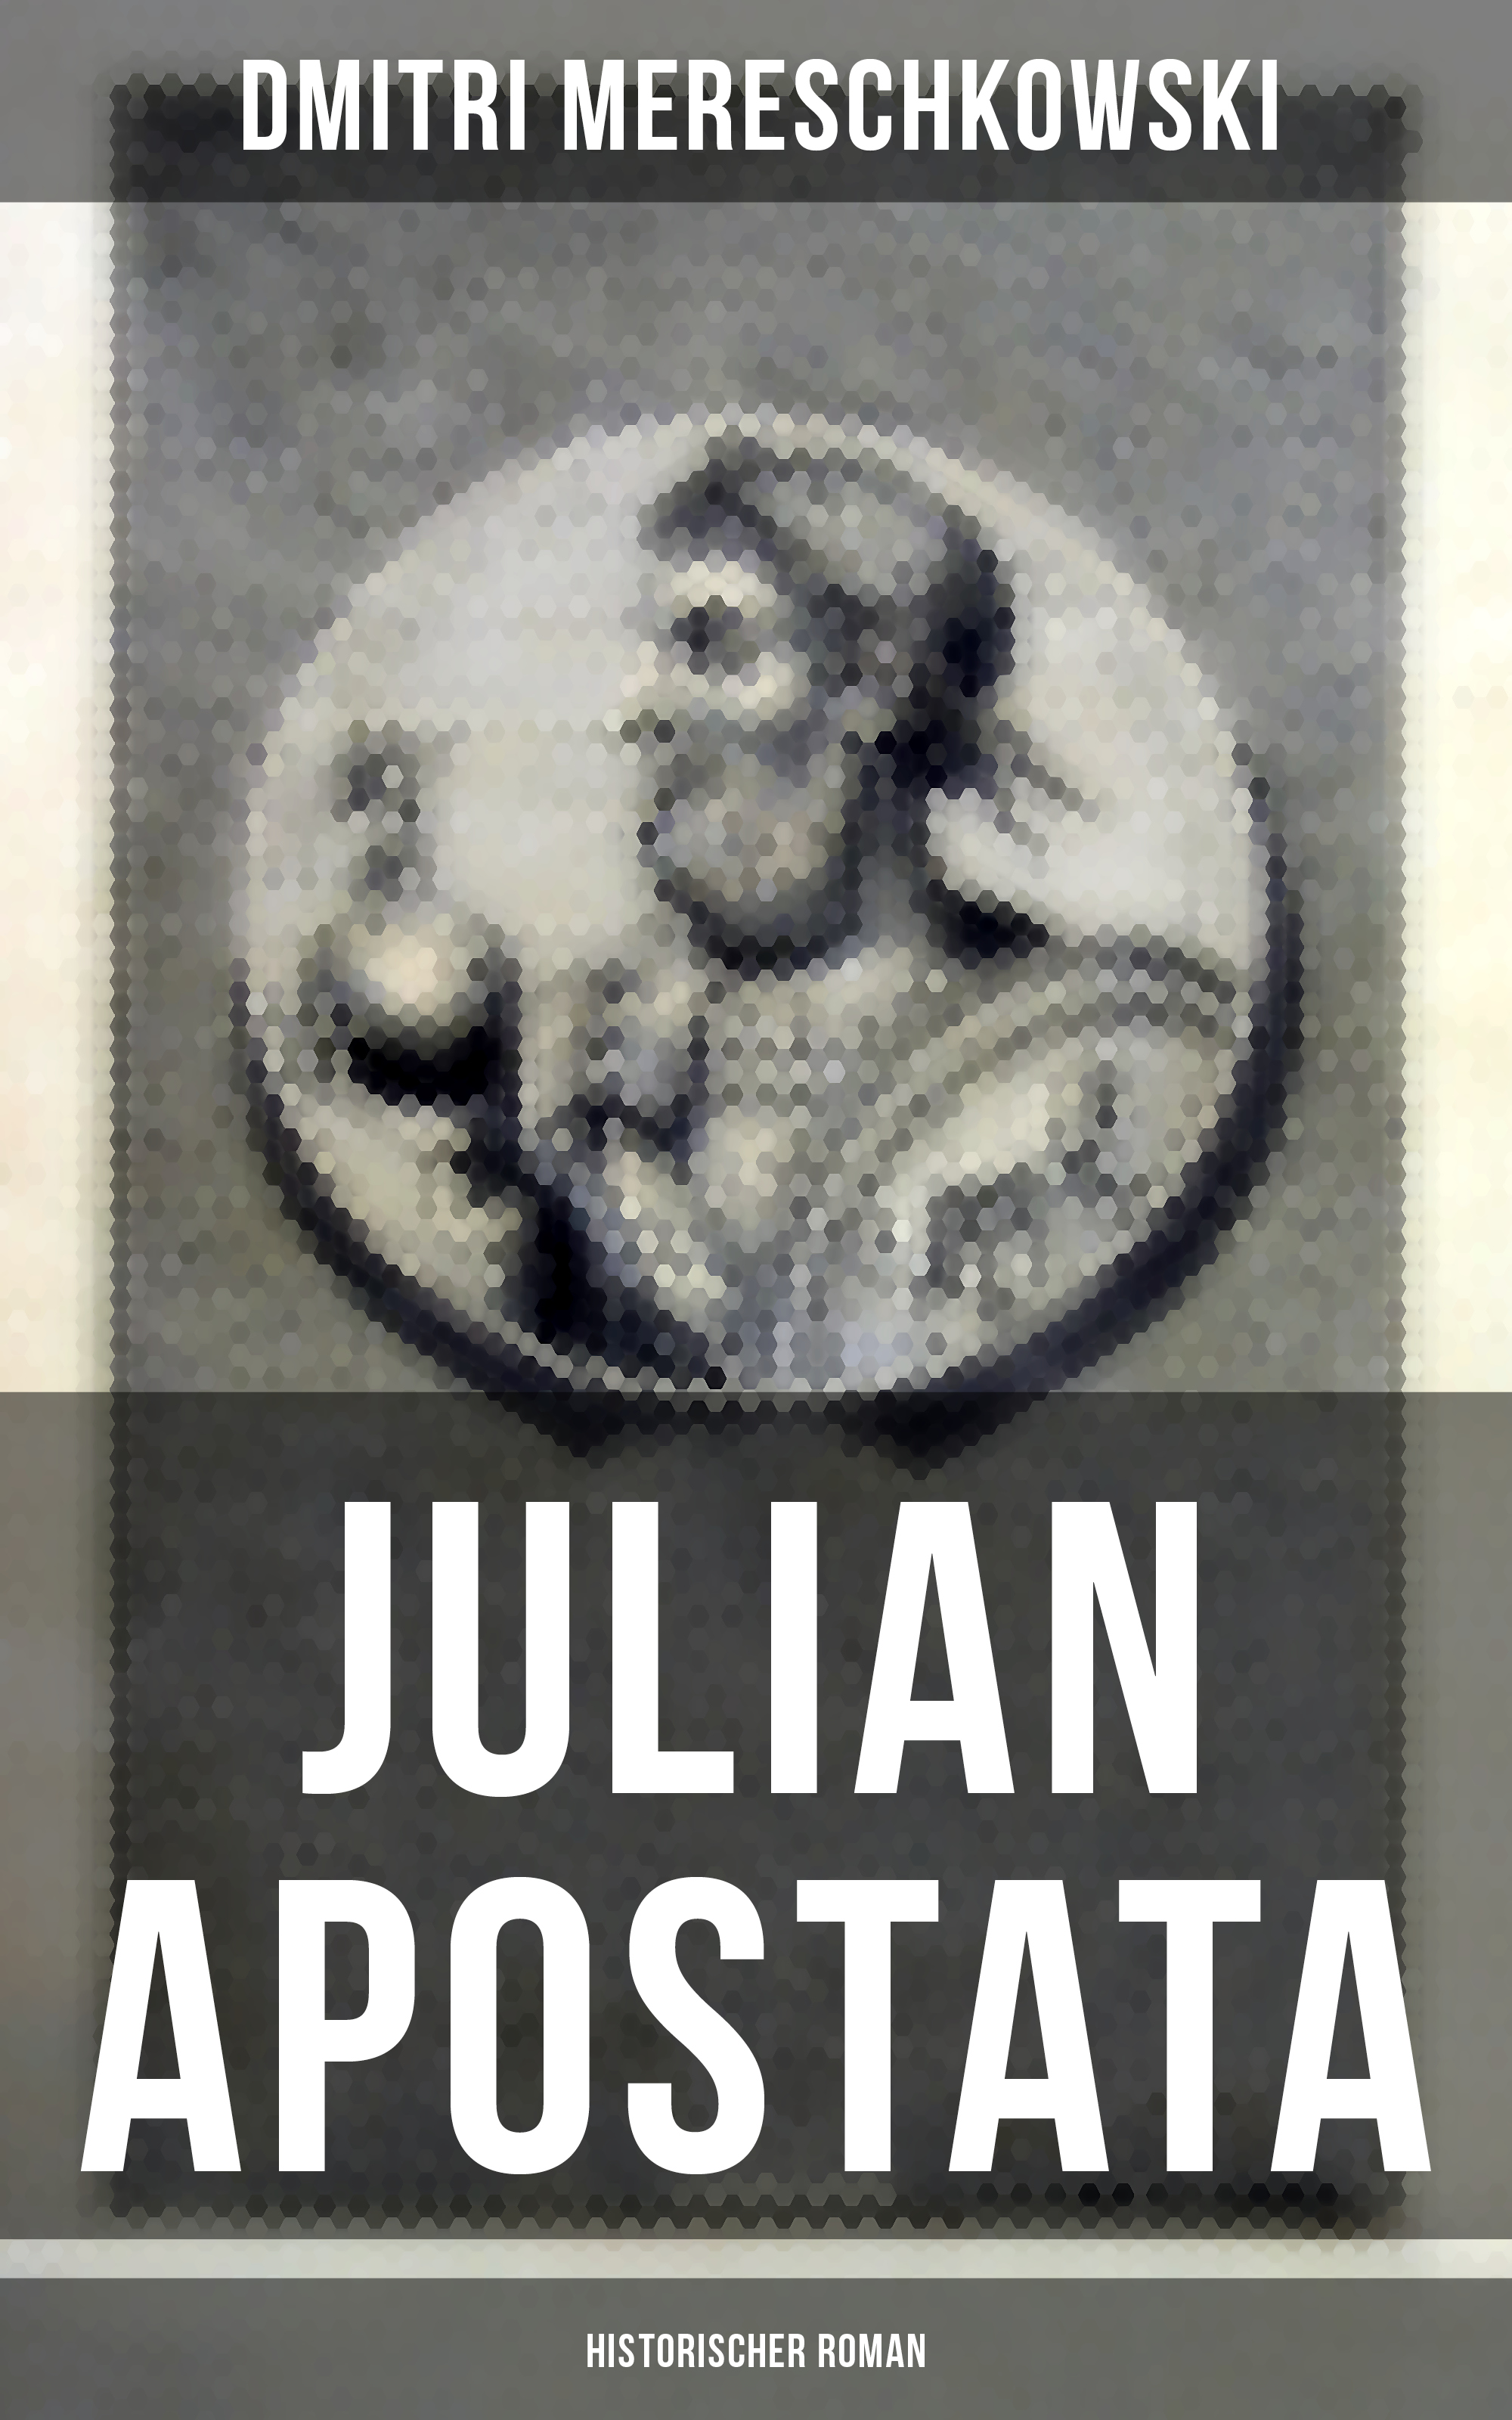 Dmitri Mereschkowski Julian Apostata (Historischer Roman)